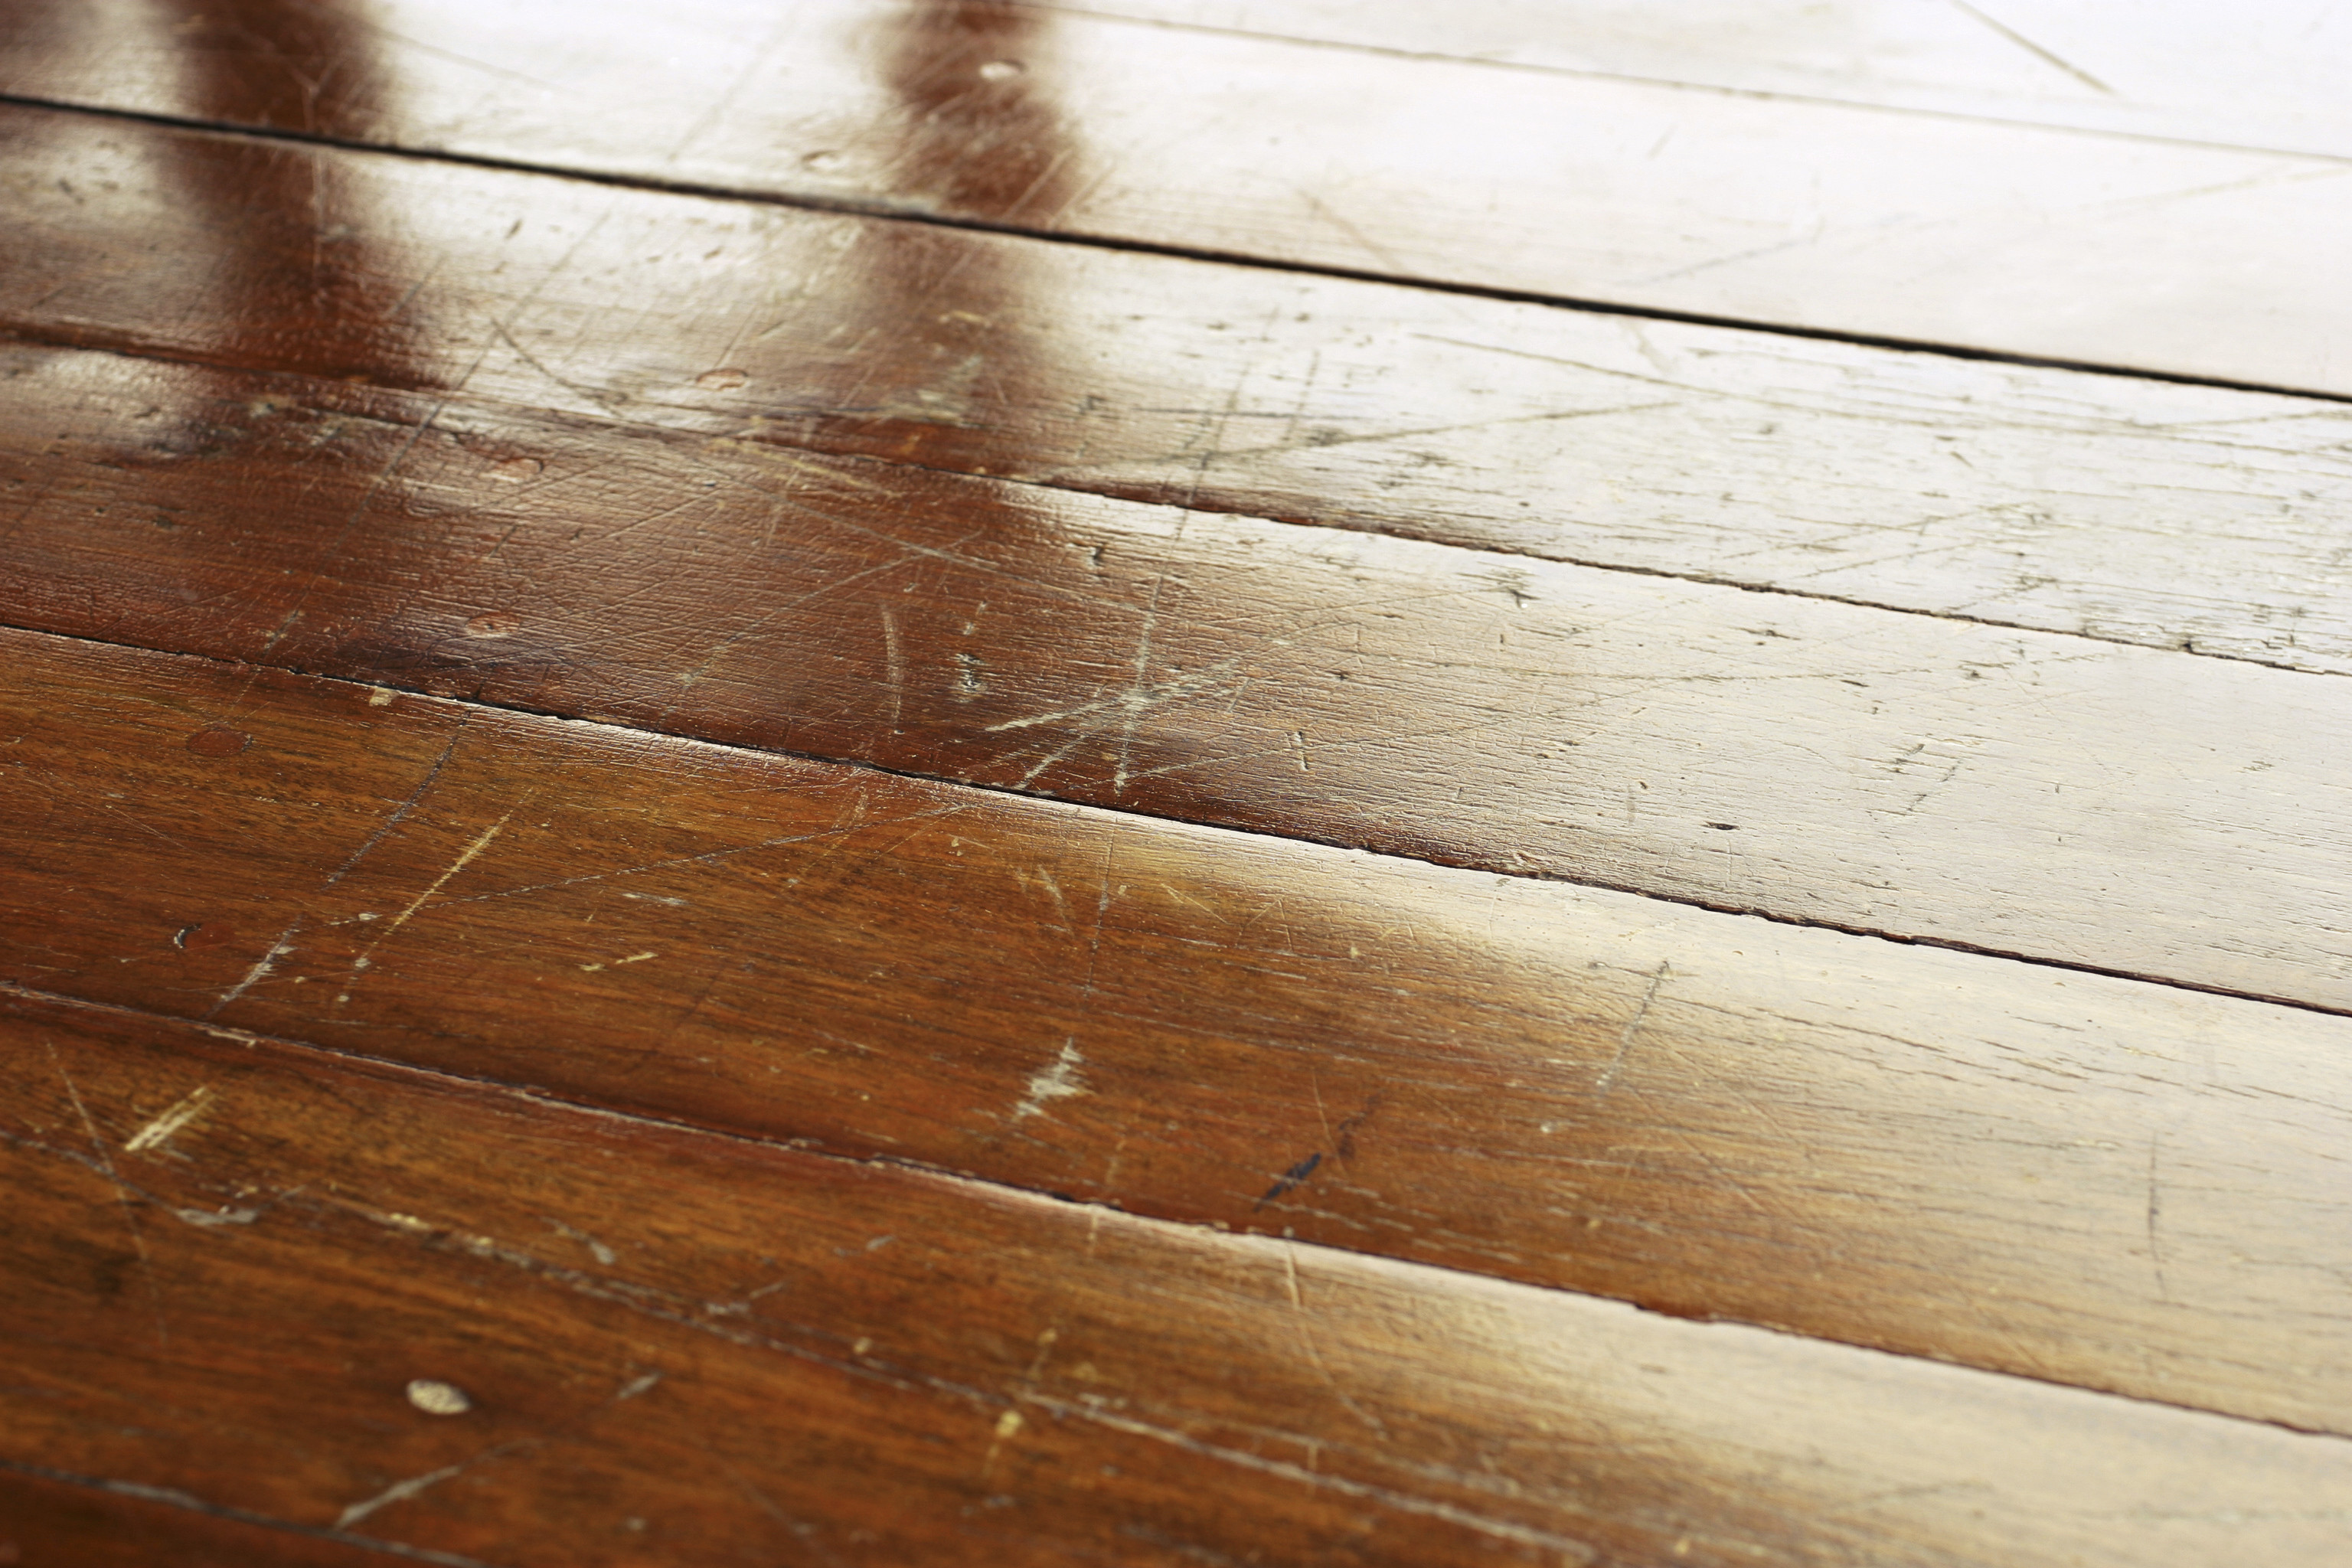 27 Best Best Hardwood Floor Mop 2016 2024 free download best hardwood floor mop 2016 of how to remove nail polish from hardwood floors hardwood floor within how to remove nail polish from hardwood floors hardwood floor cleaning how to mop hardwoo